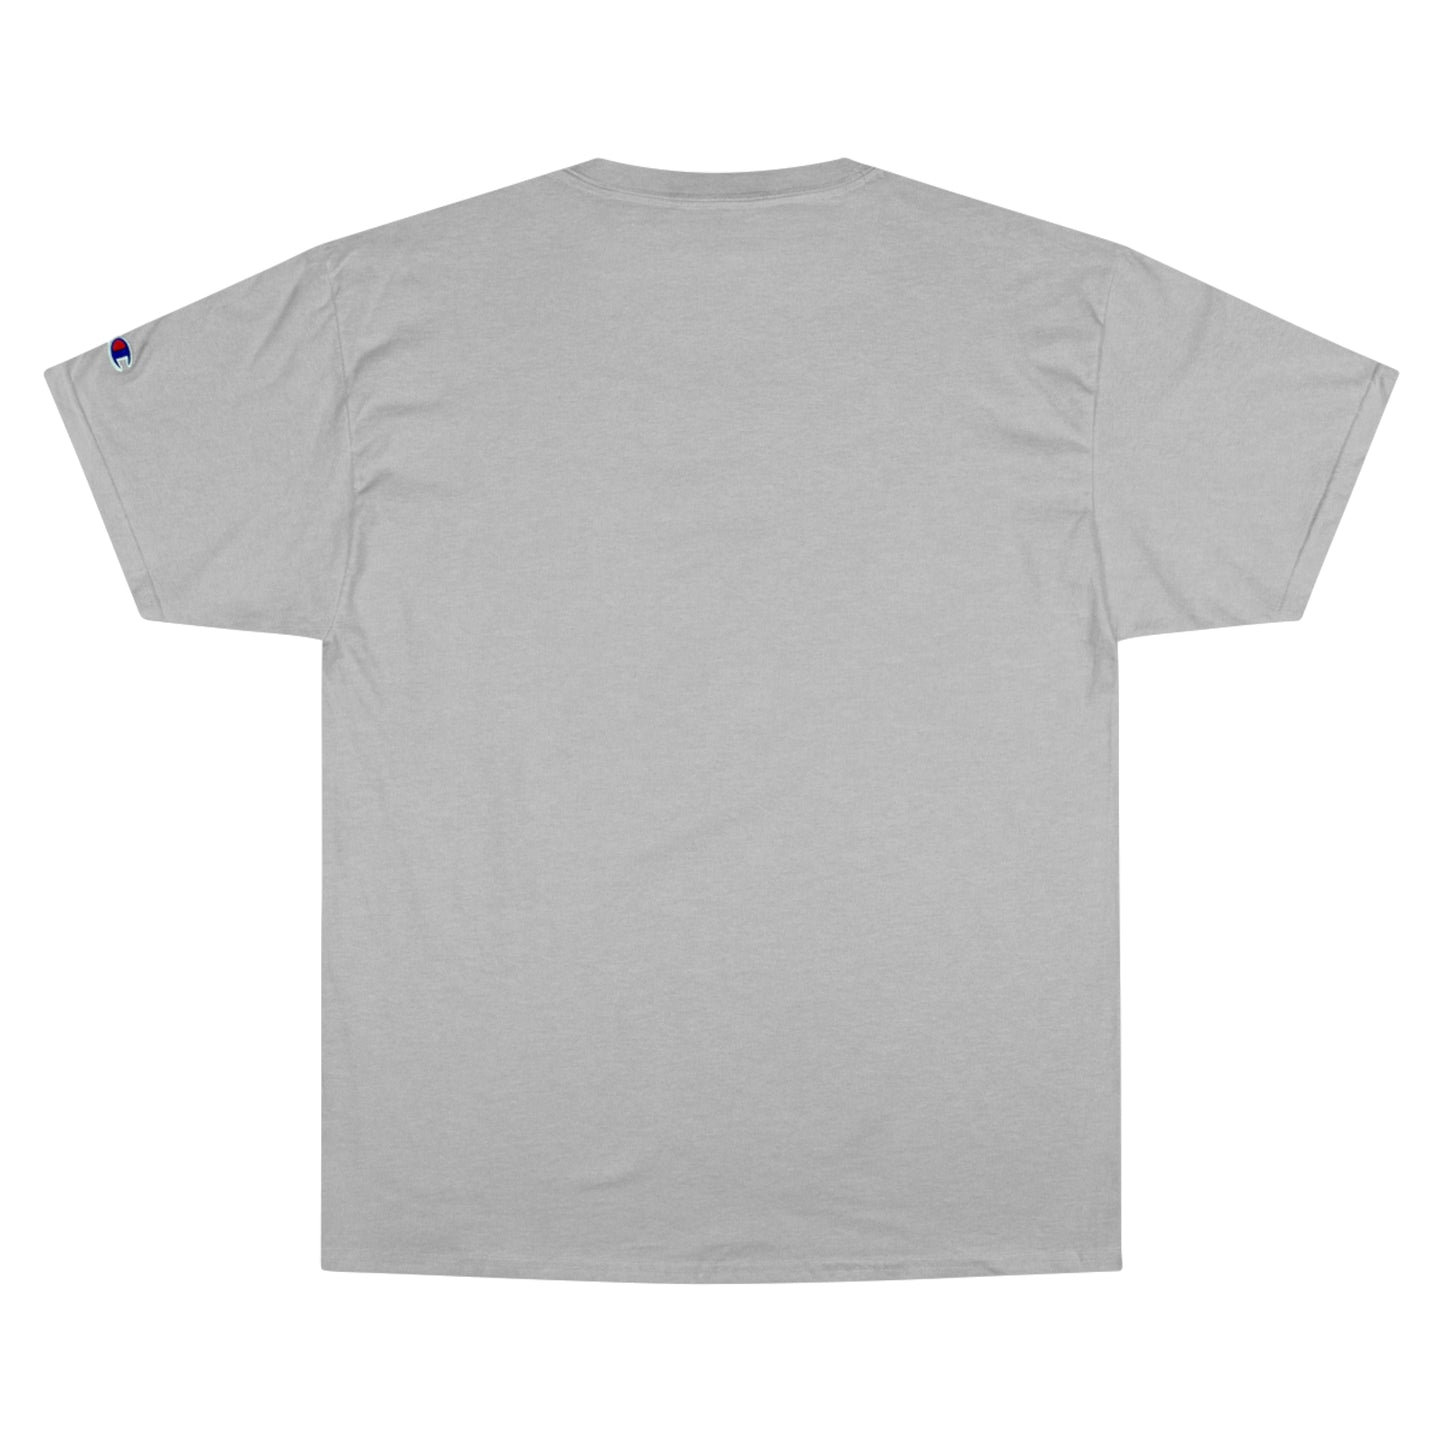 Basketball Cutout - Champion T-Shirt